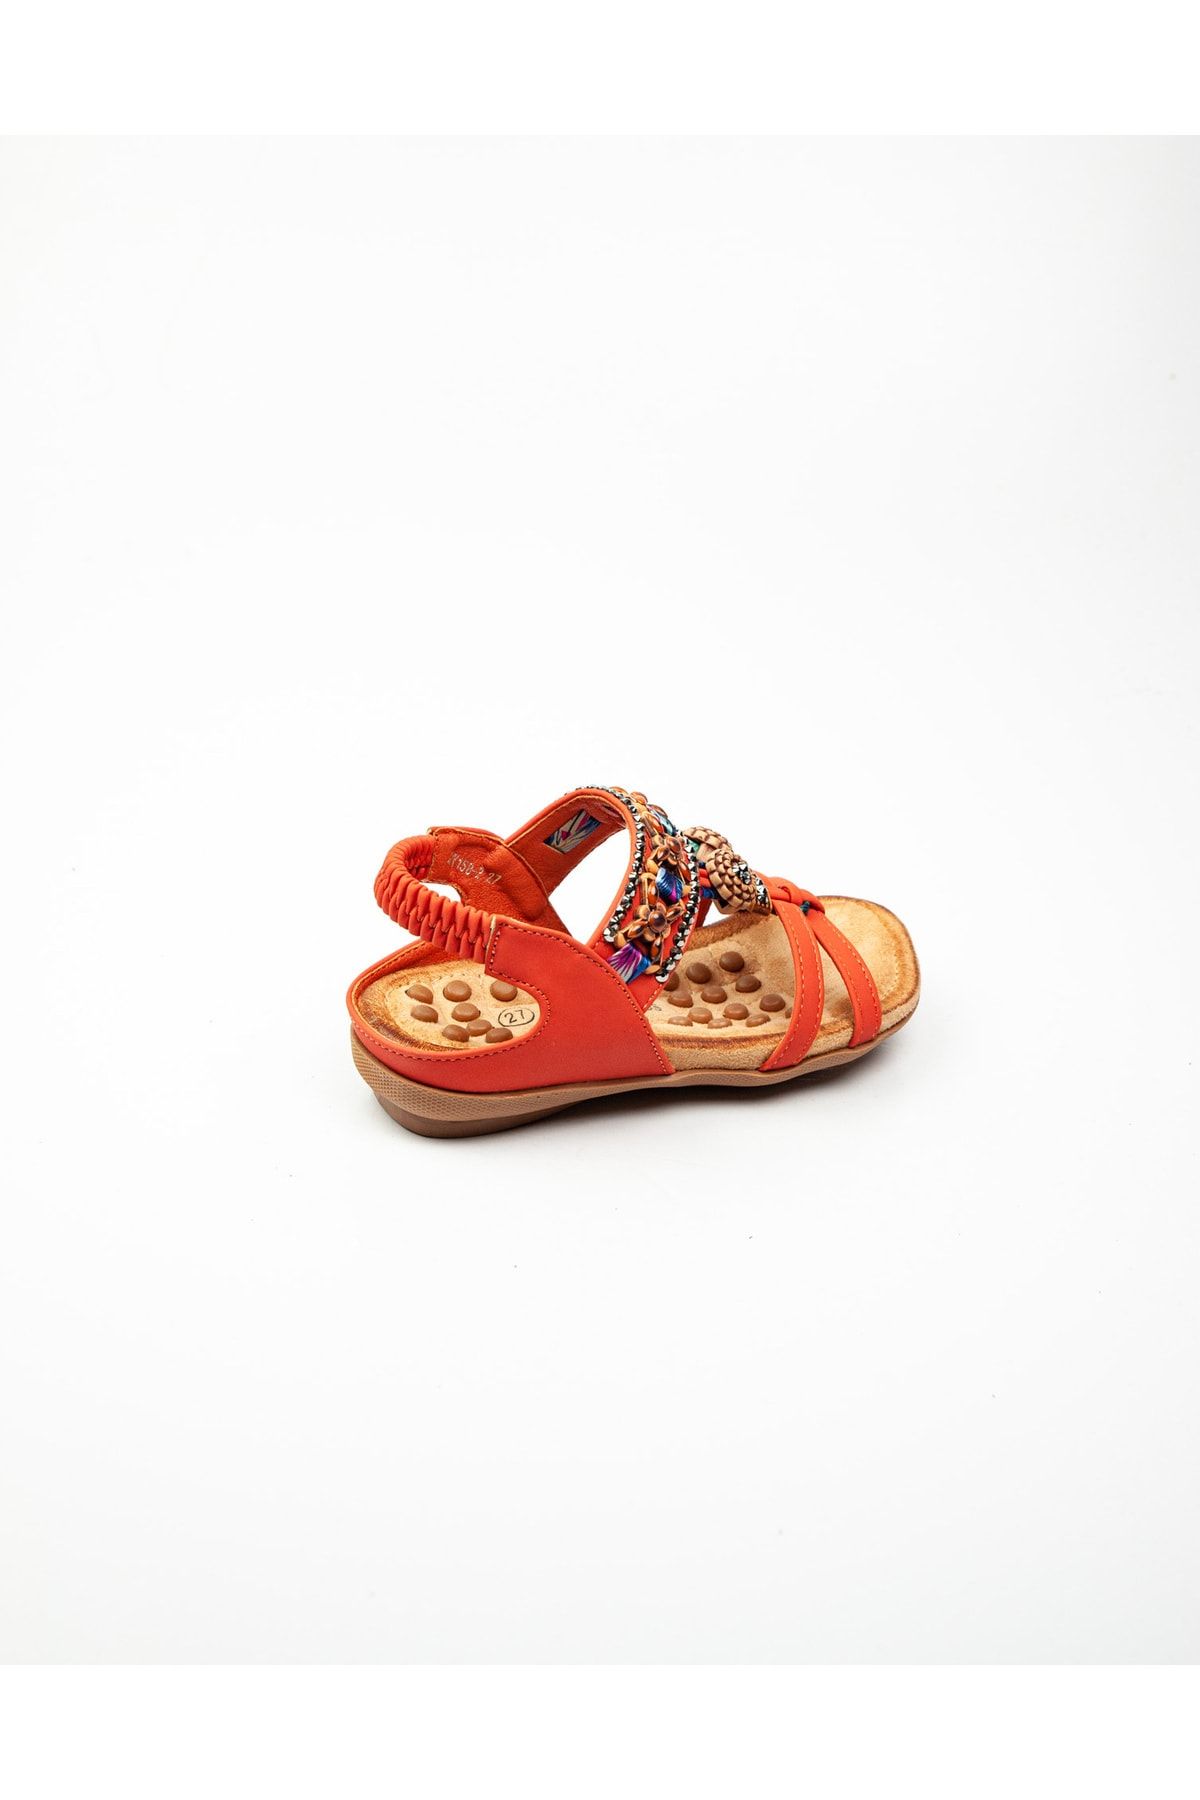 Guja 158 - 2 Turuncu Kız Çocuk Sandalet